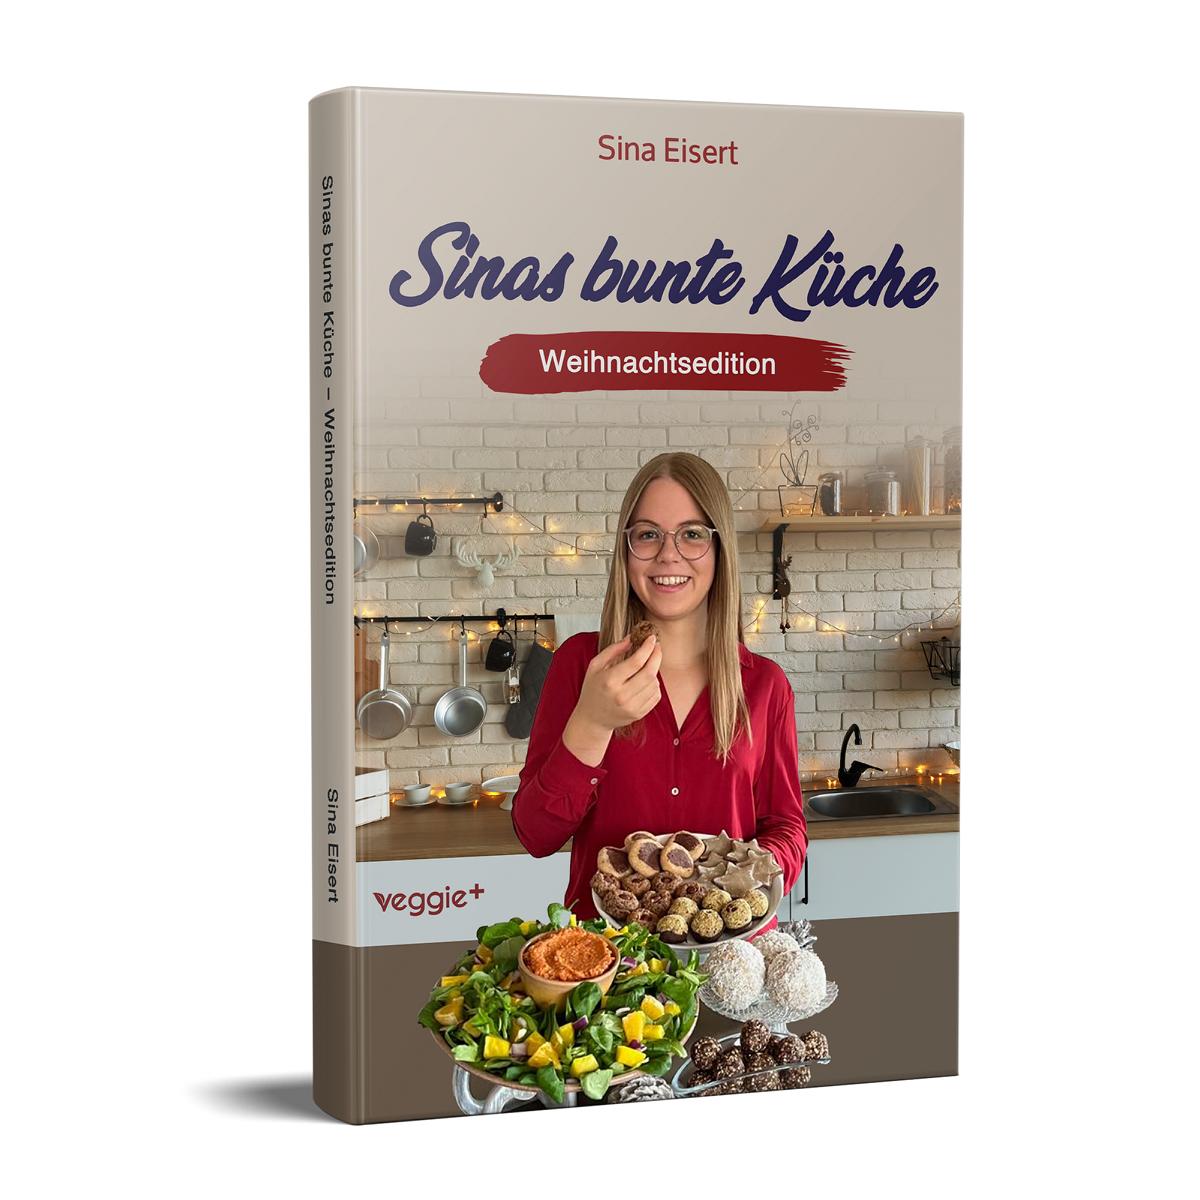 Sinas bunte Küche – vegan und zuckerfrei (Weihnachtsedition): Das große Weihnachtskochbuch mit über 70 veganen Rezepten ohne Zucker für die Weihnachtszeit von Sina Eisert im veggie + Verlag